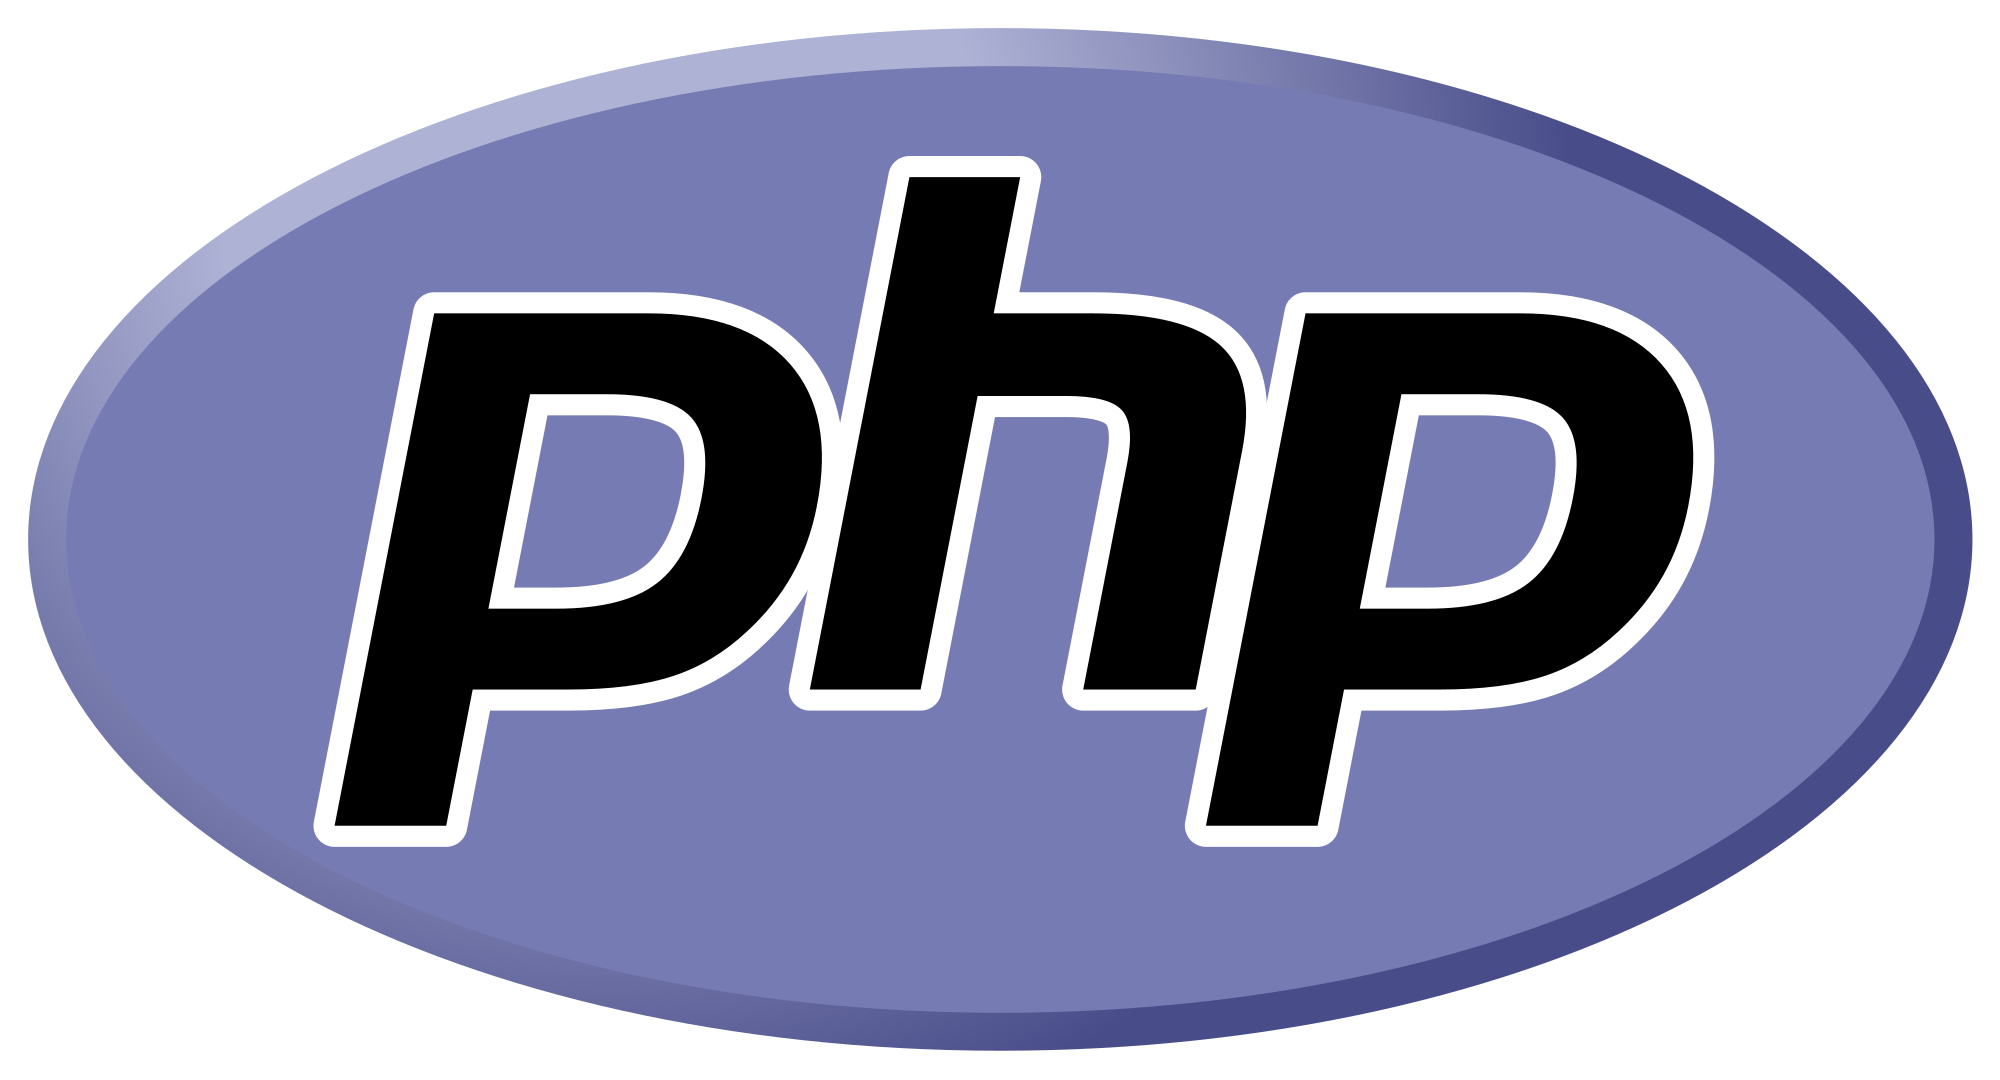 पीएचपी क्या है? (What is PHP in Hindi)